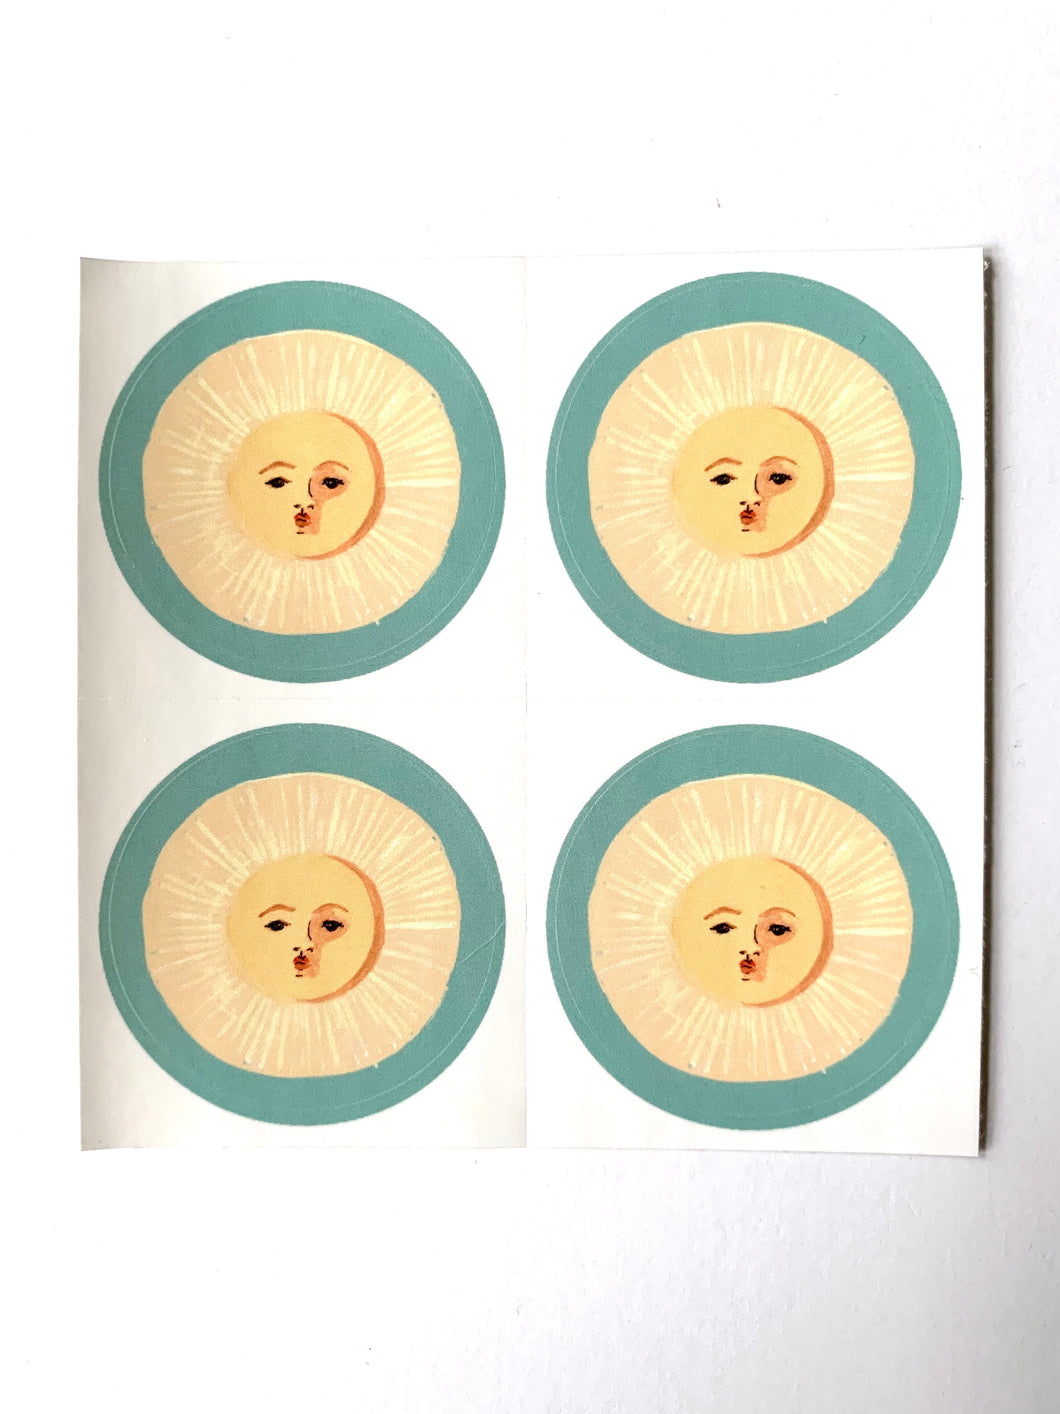 Soleil Sticker Sheet - (4) 1.5